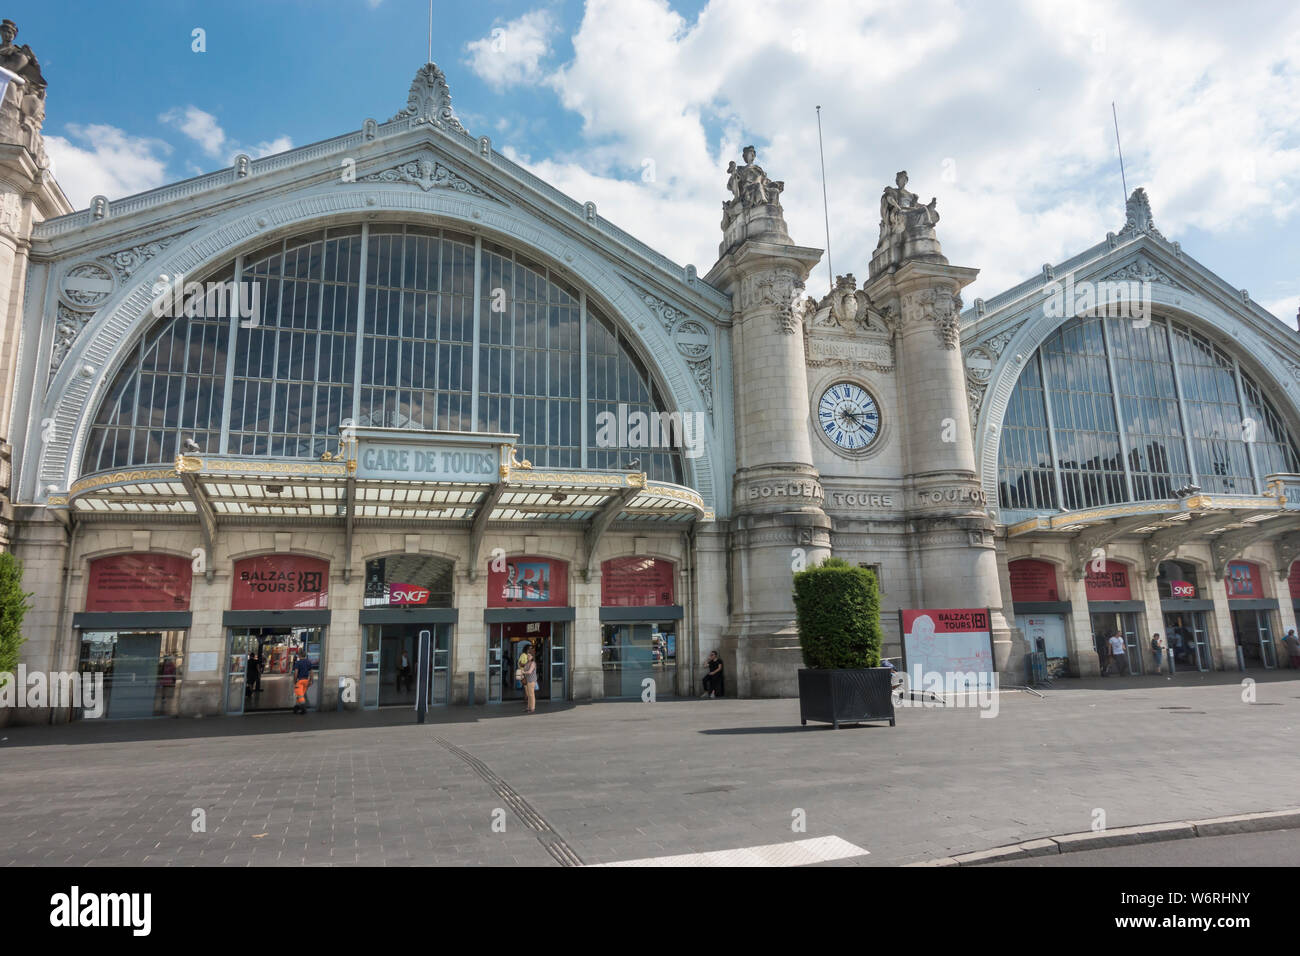 Historic Gare de Tours, Tours, France train station built in 1898. Stock Photo